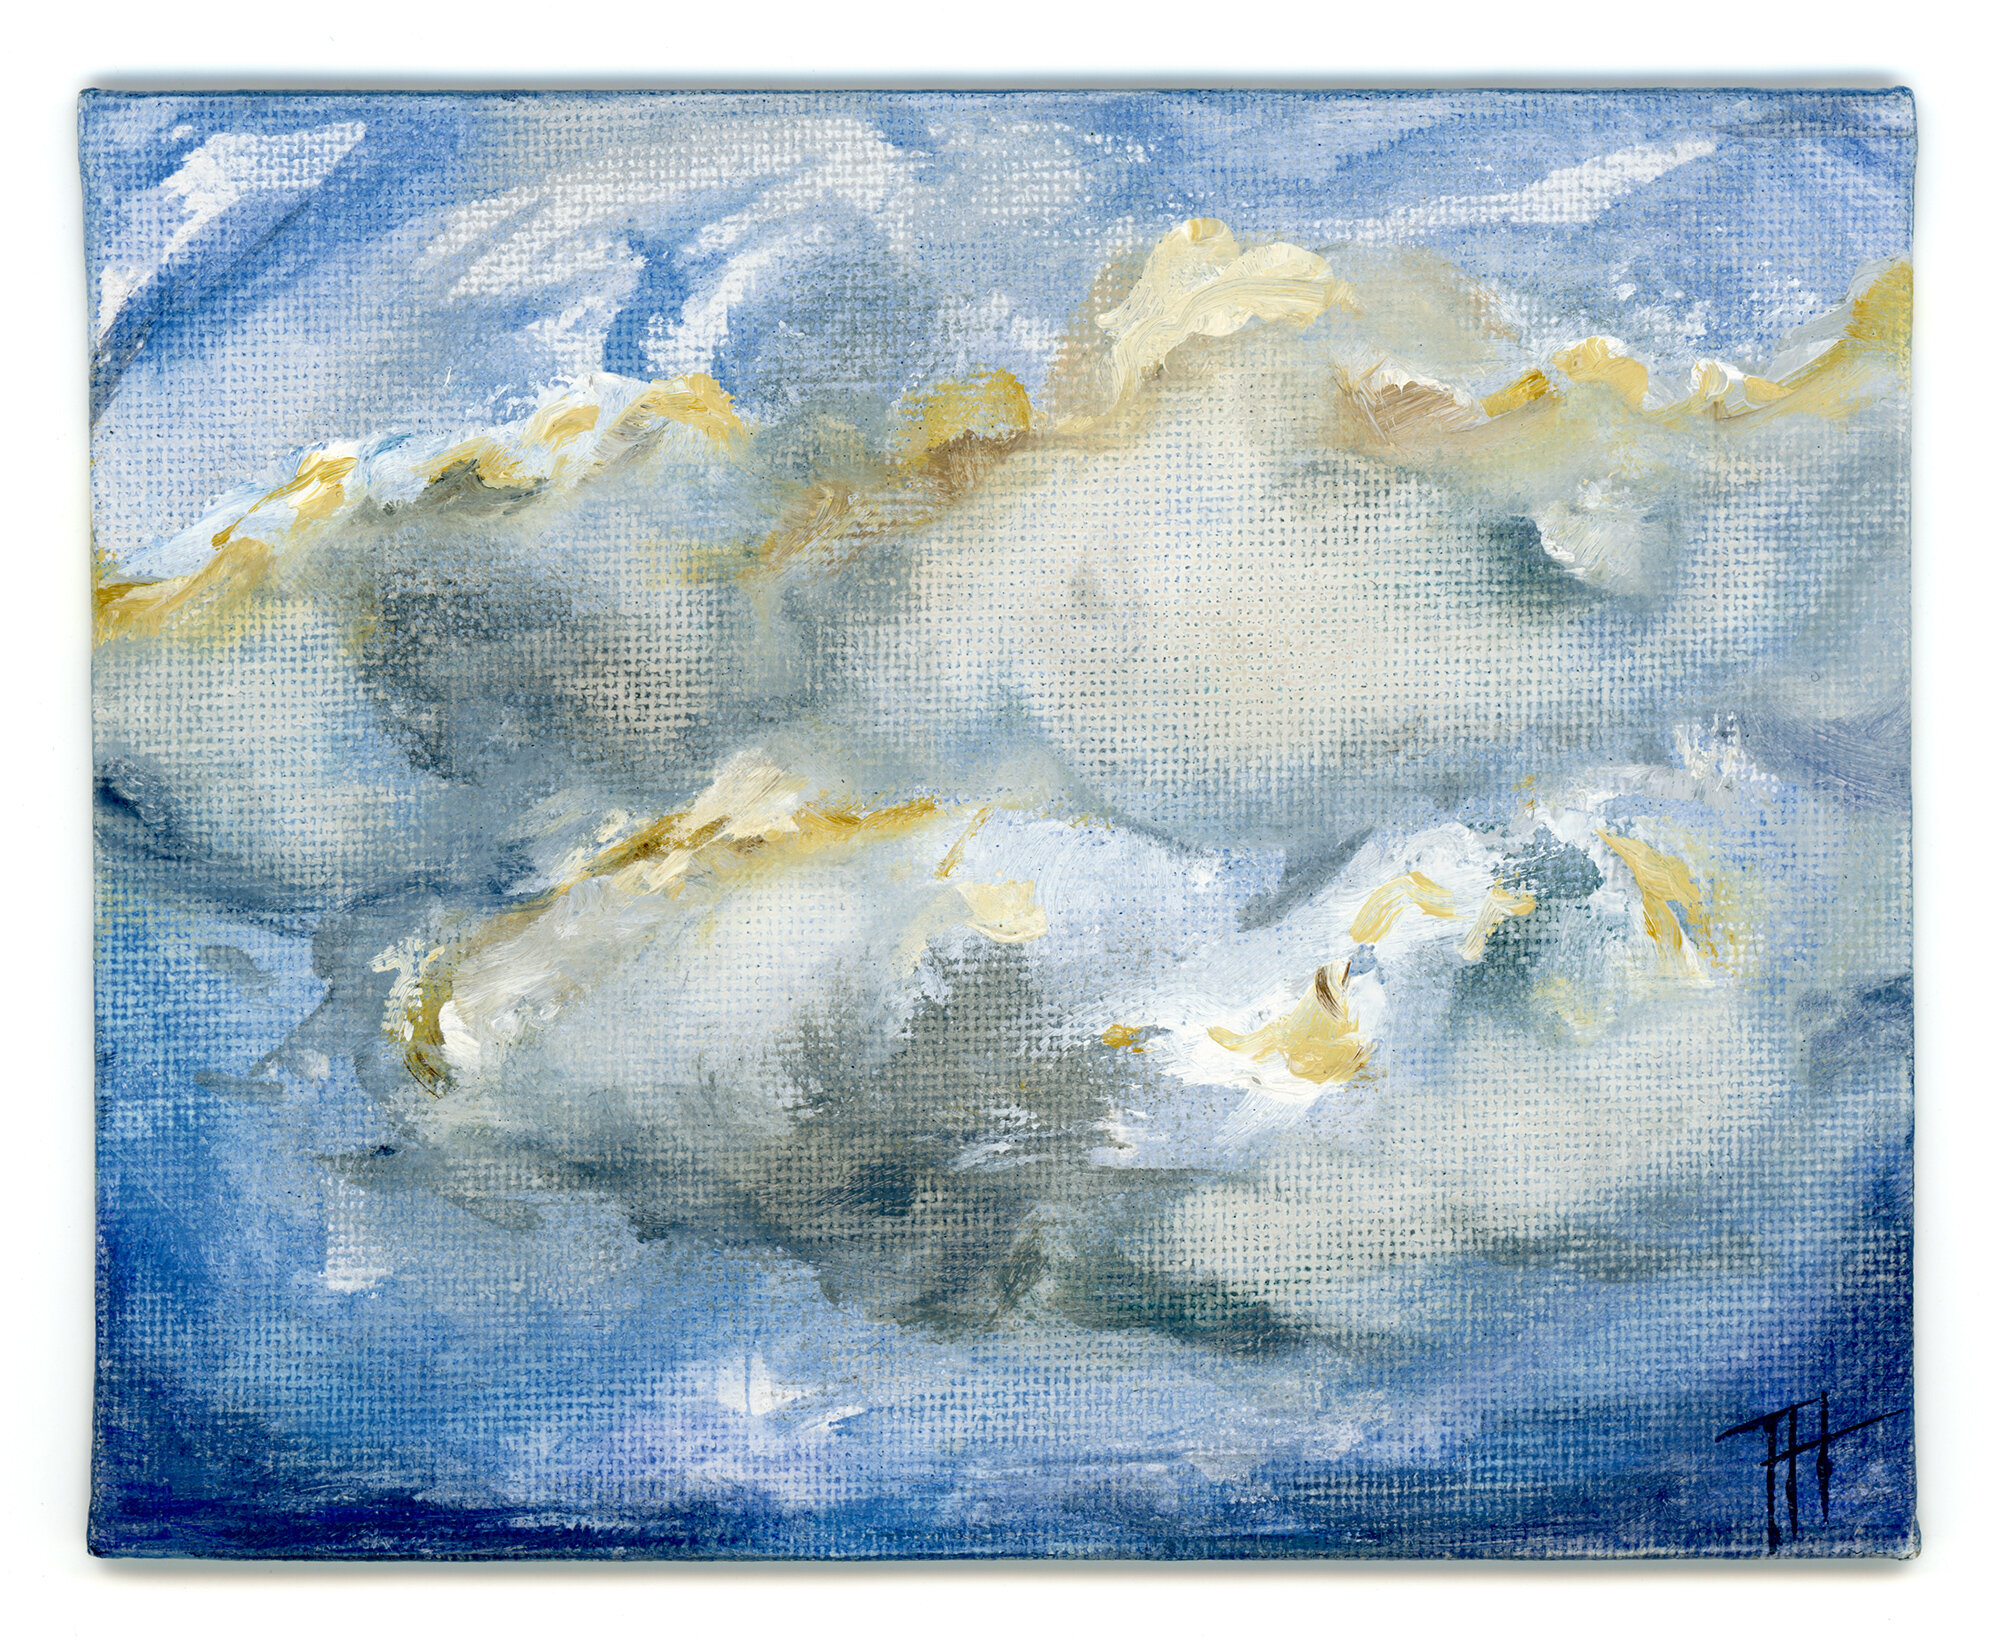  Plein Air Cloud, 2020. 4.75 x 5.9 in. Oil on canvas board. 